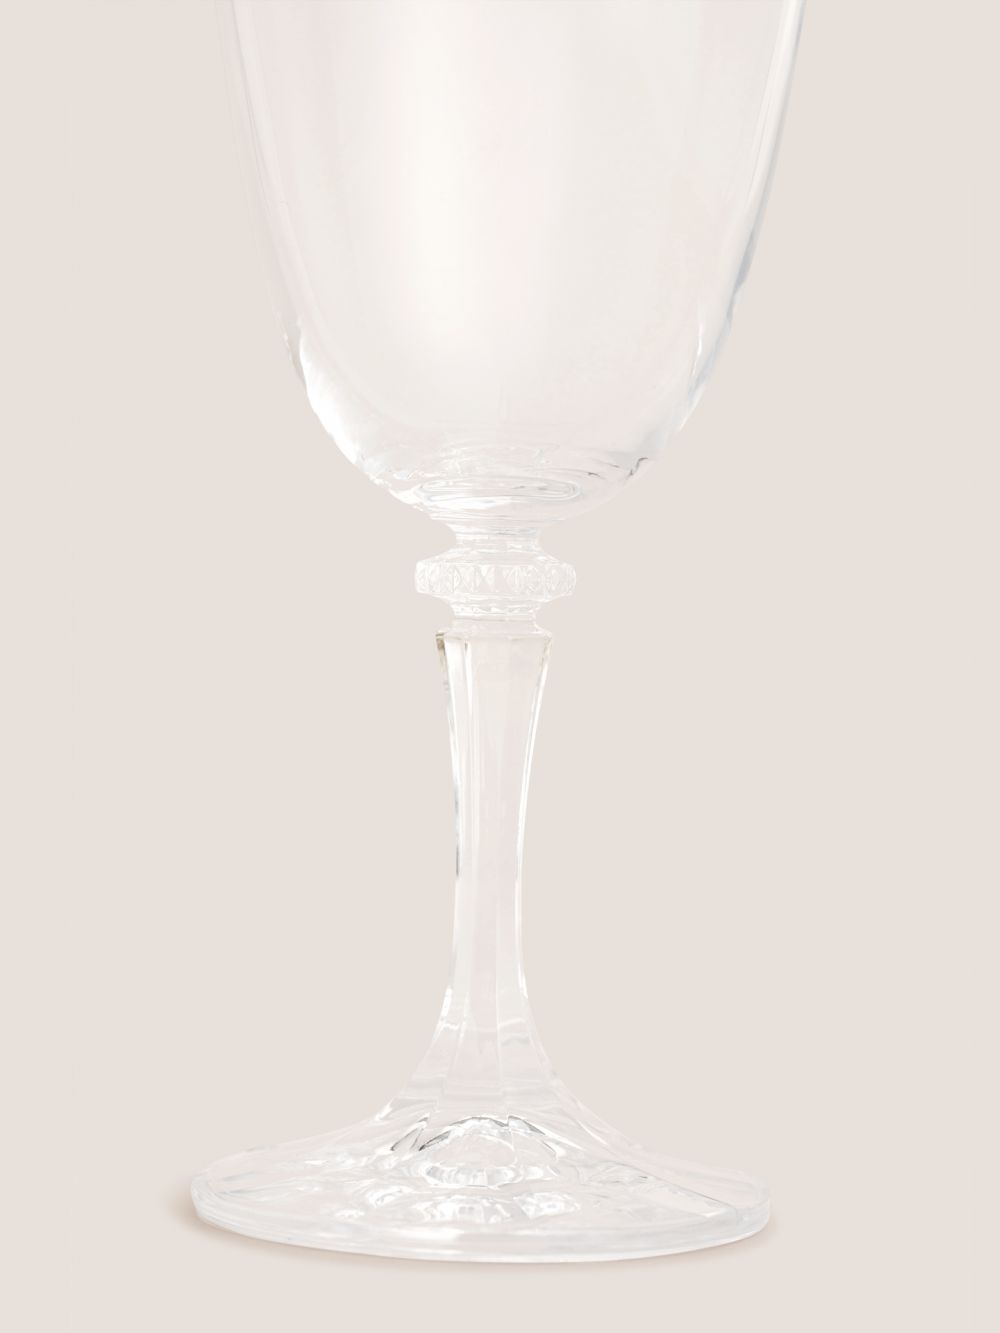 כוס יין קריסטל BRANTA בנפח 360 מ”ל